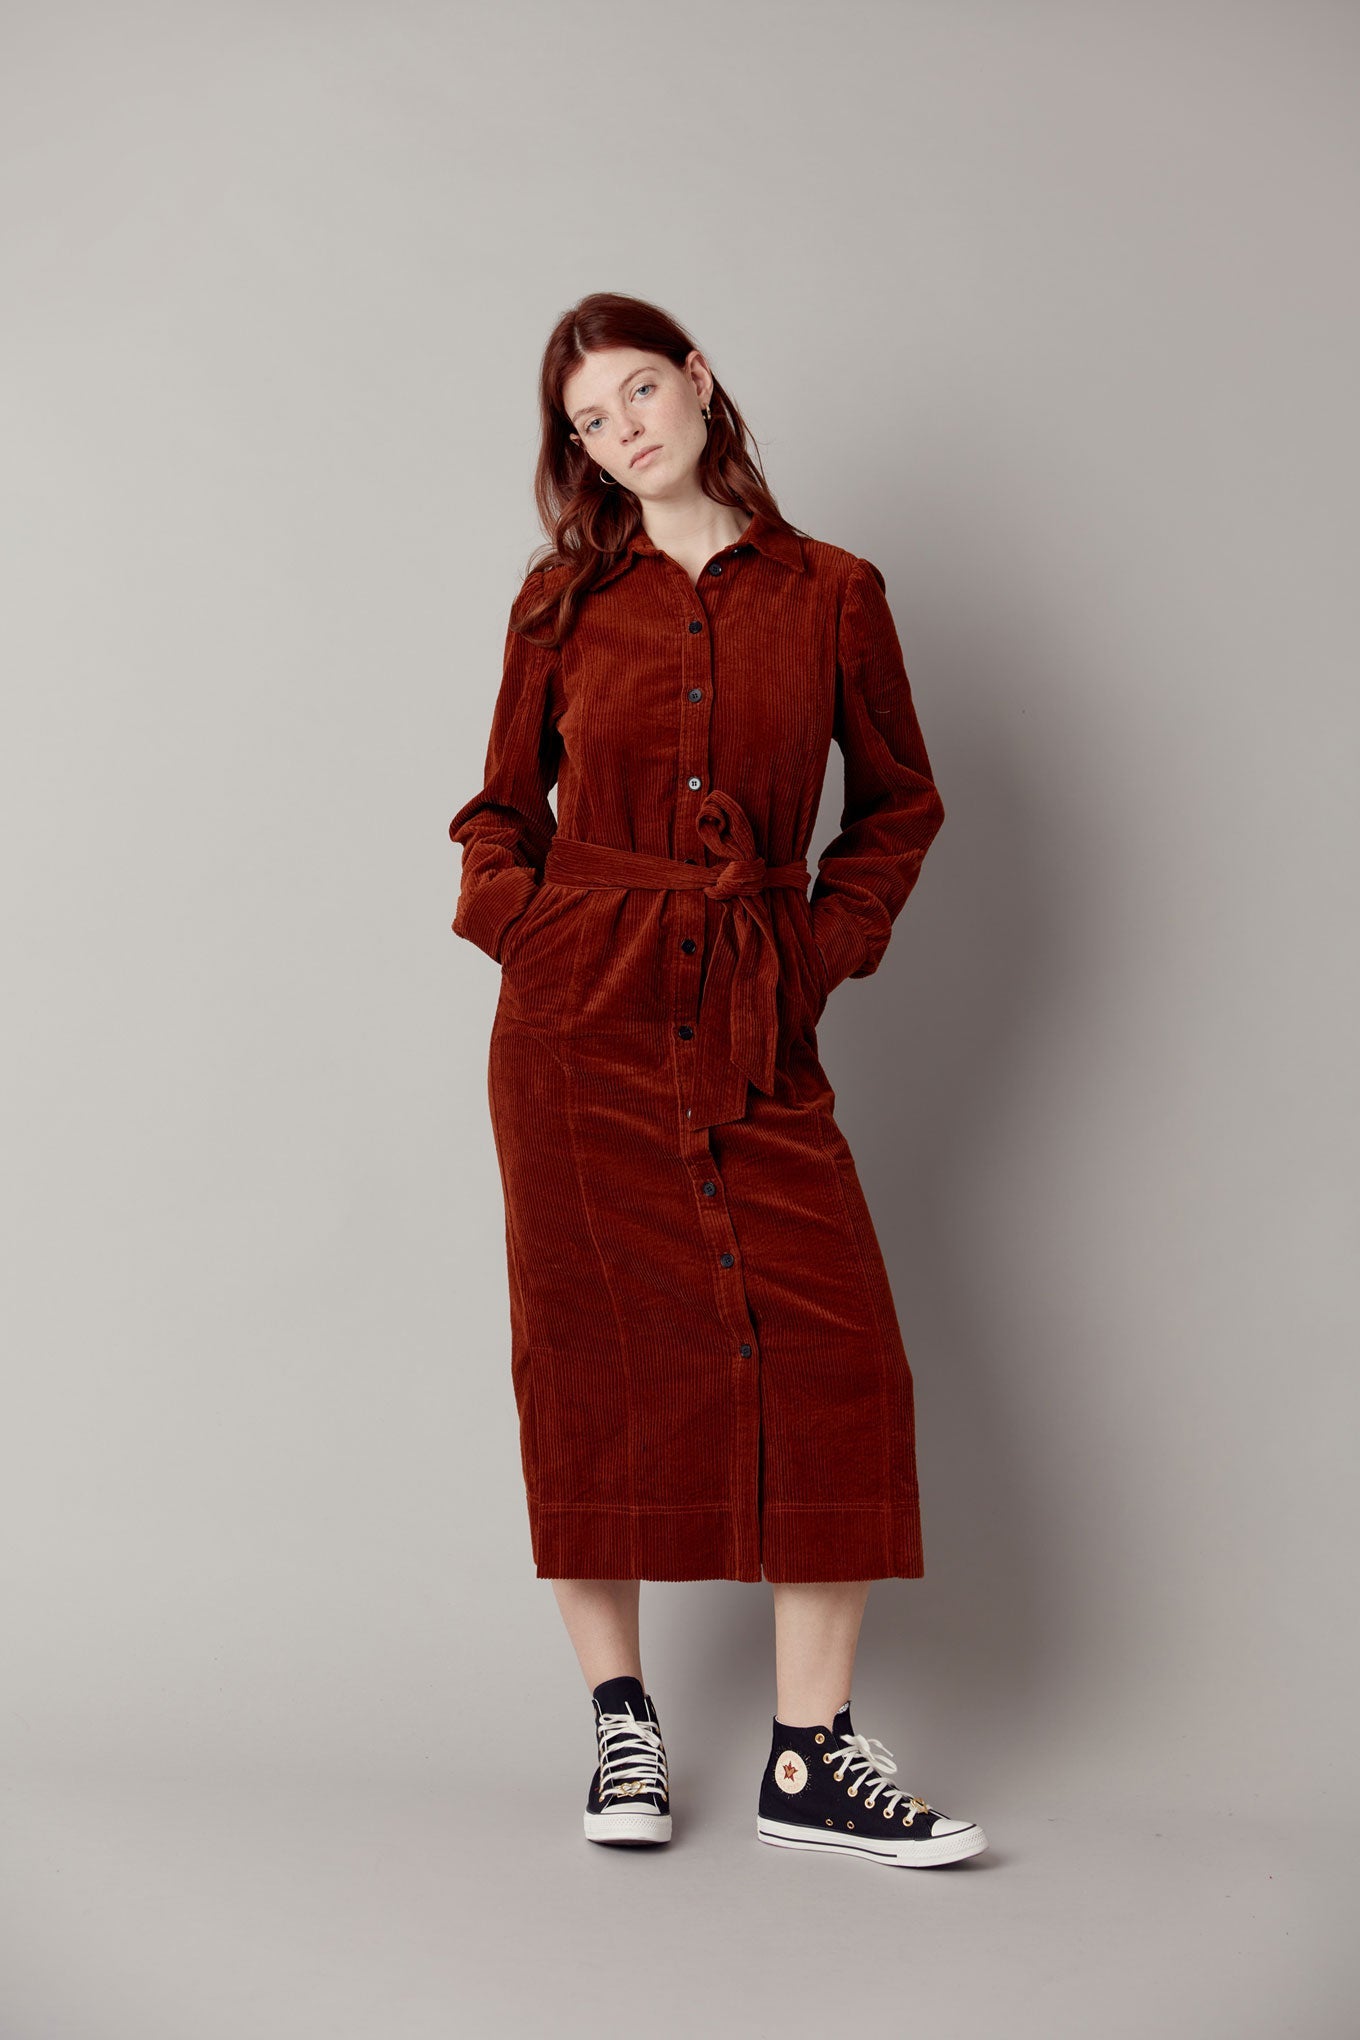 Robe longue en velours côtelé rouge-marron REINA en coton 100% biologique de Komodo